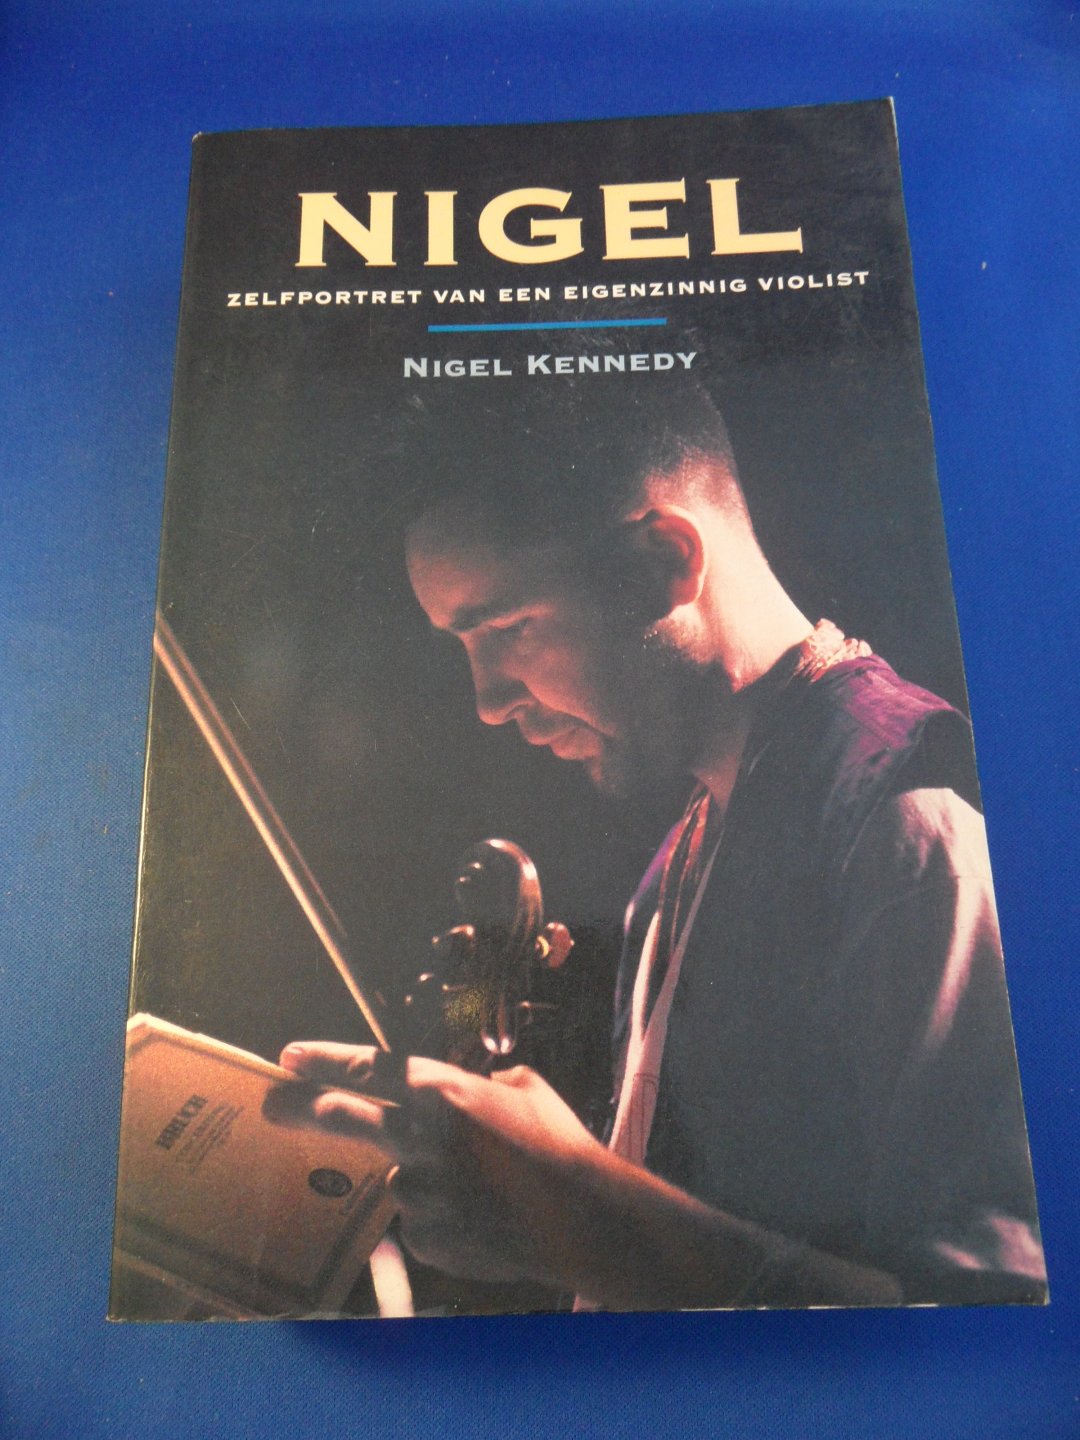 Kennedy, Nigel - Nigel. Zelfportret van een eigenzinnige violist